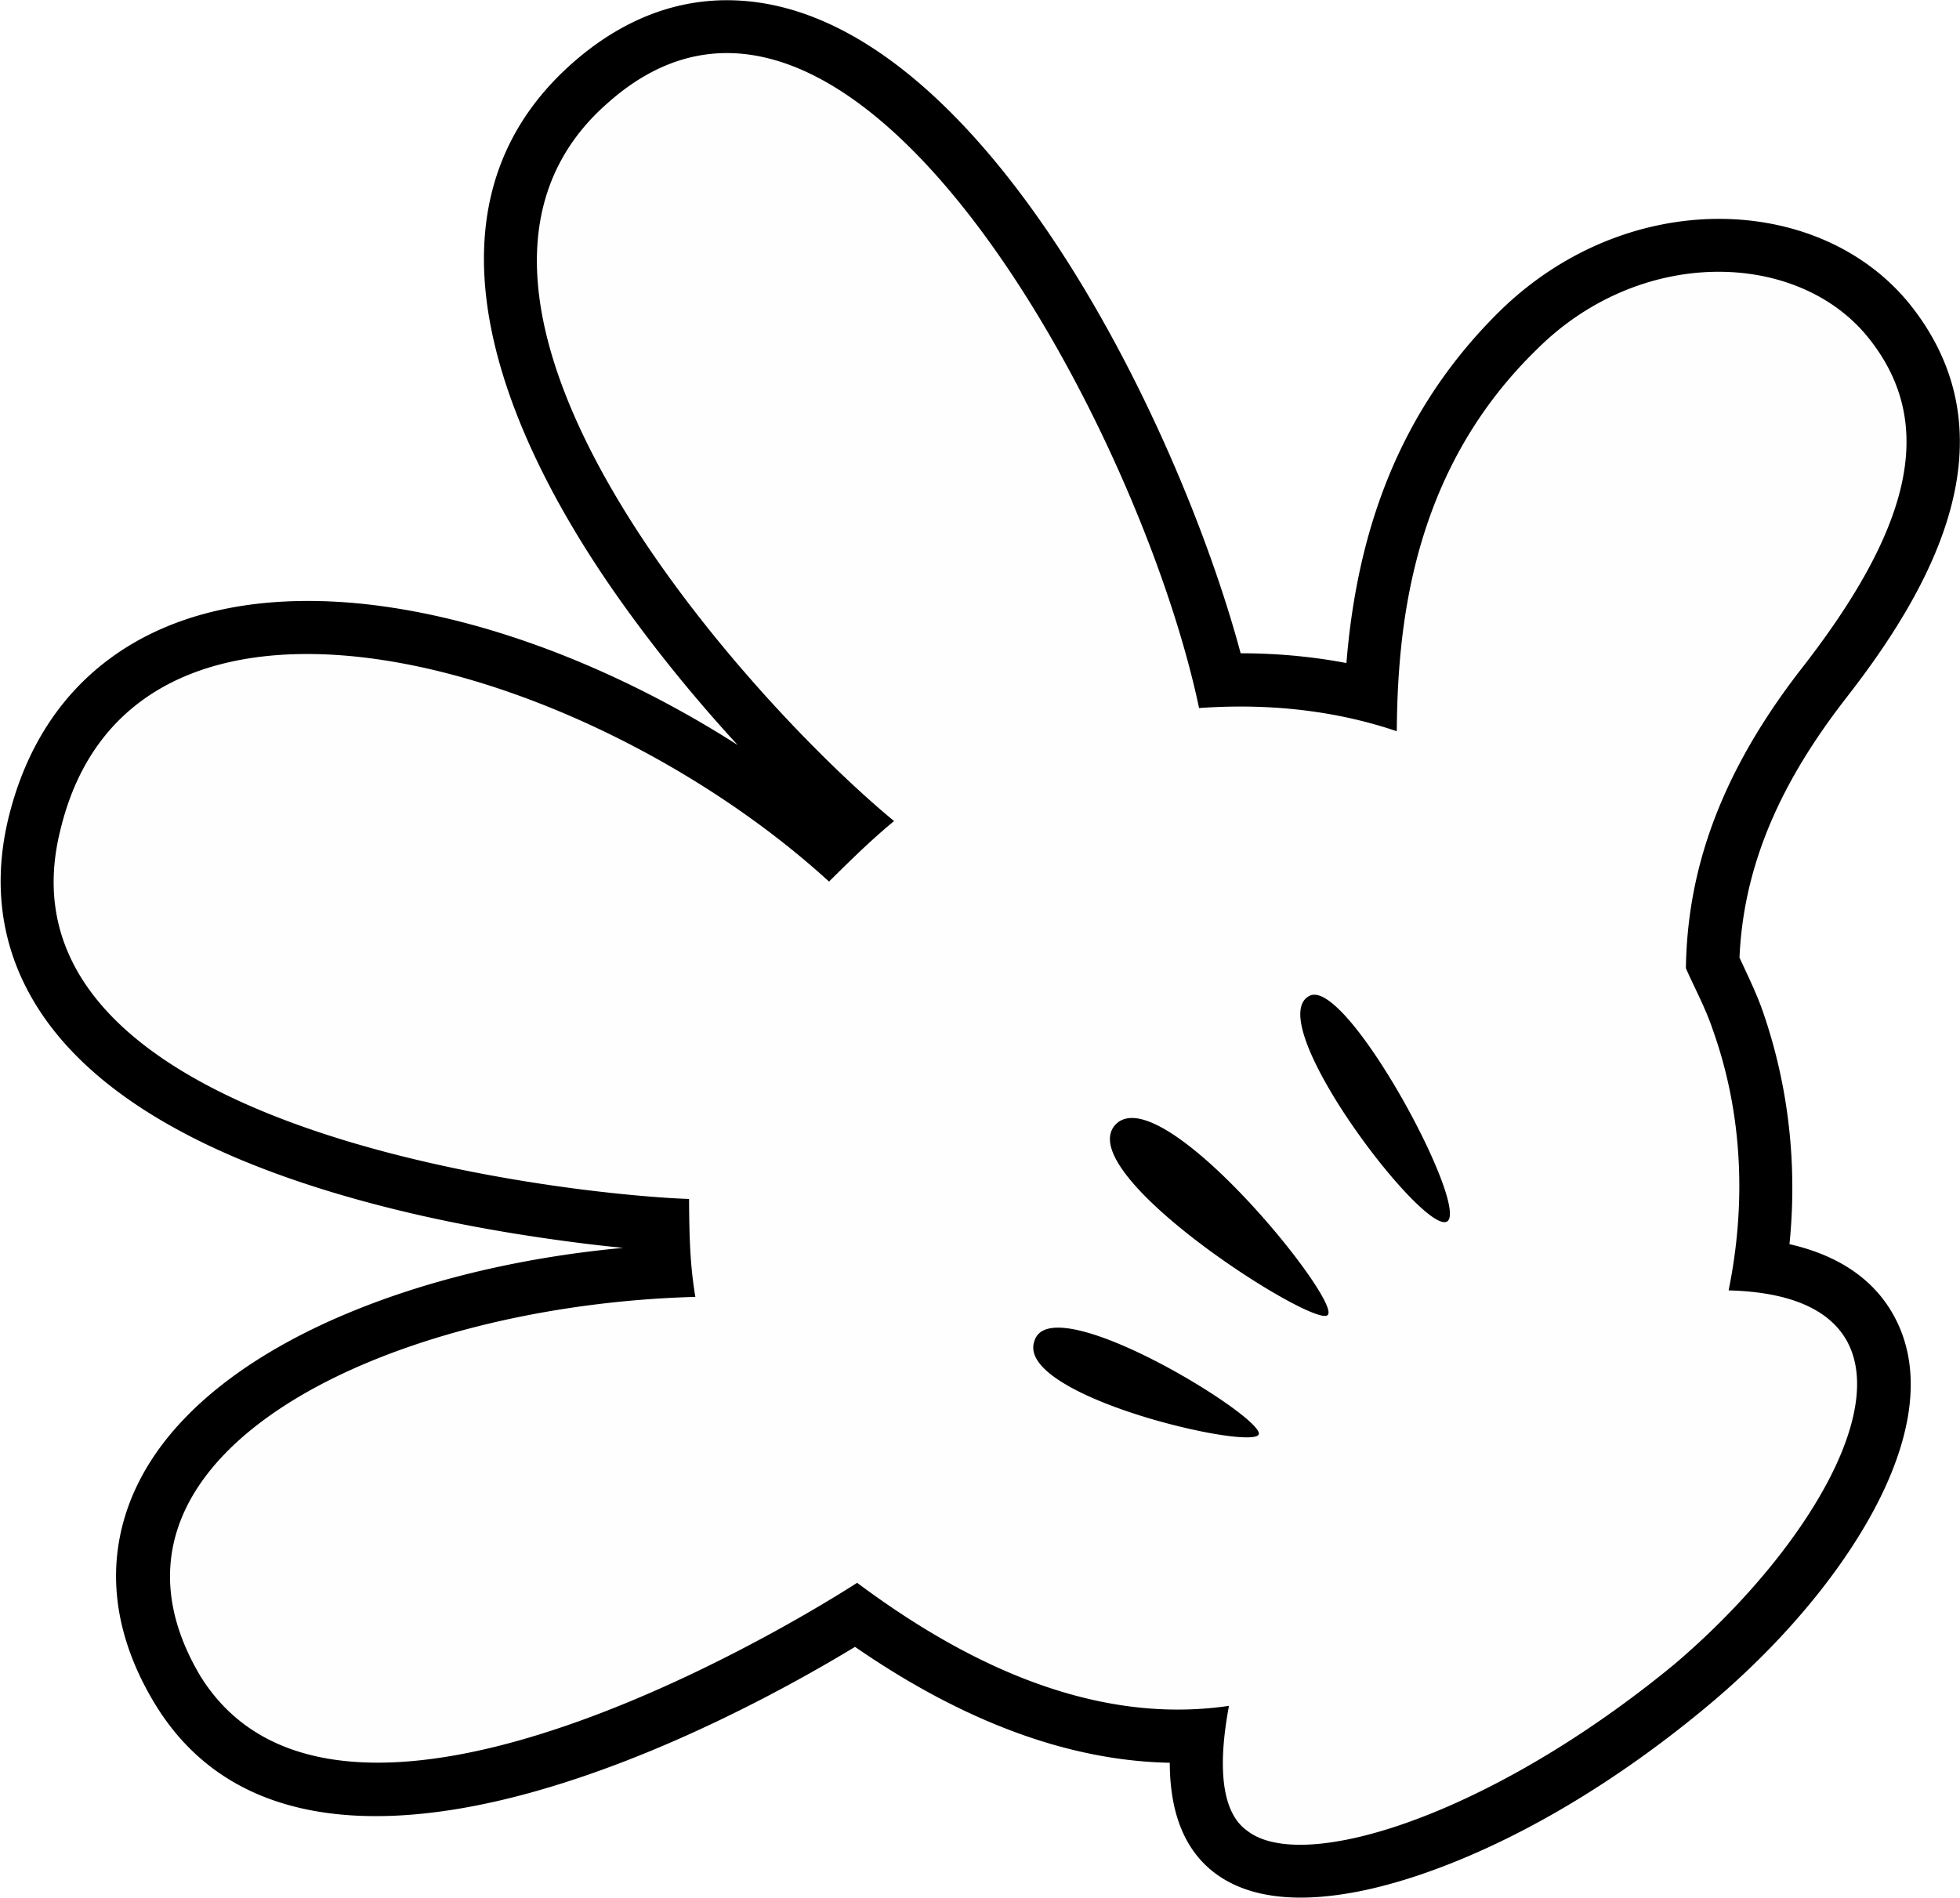 Invitation clipart black and white. Mickey hand clip art